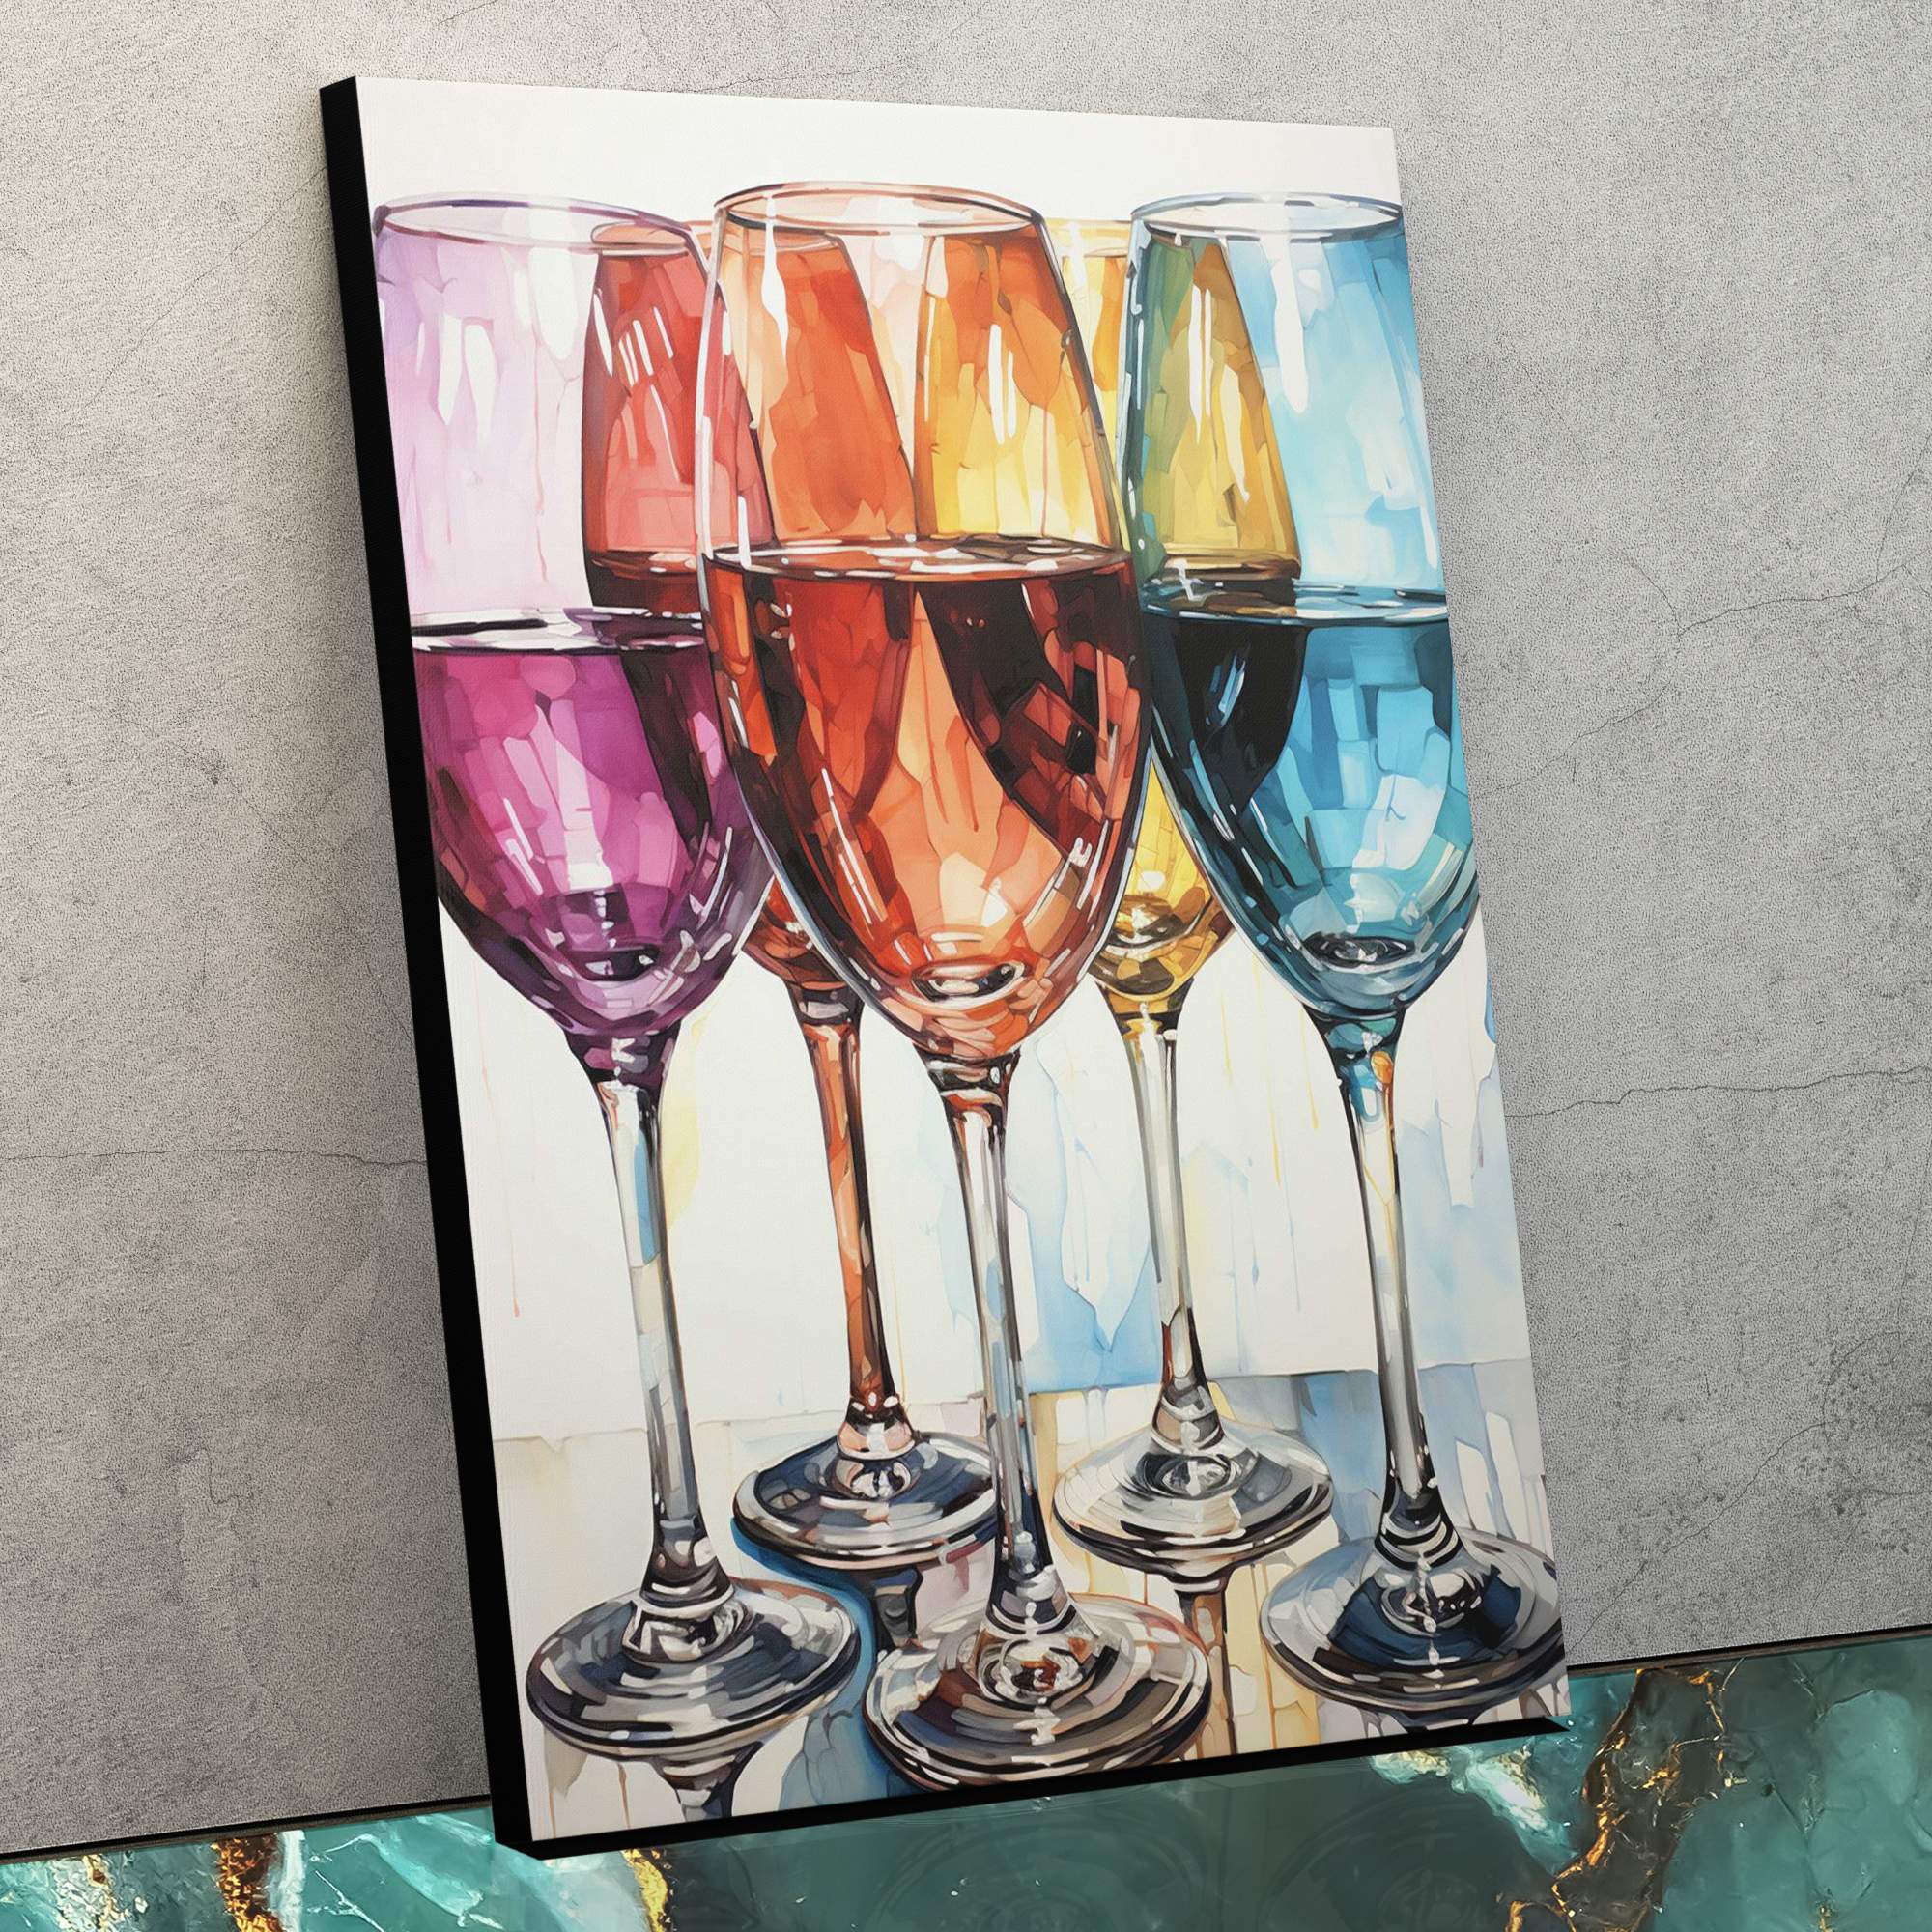 Rainbow Glasses - Luxury Wall Art